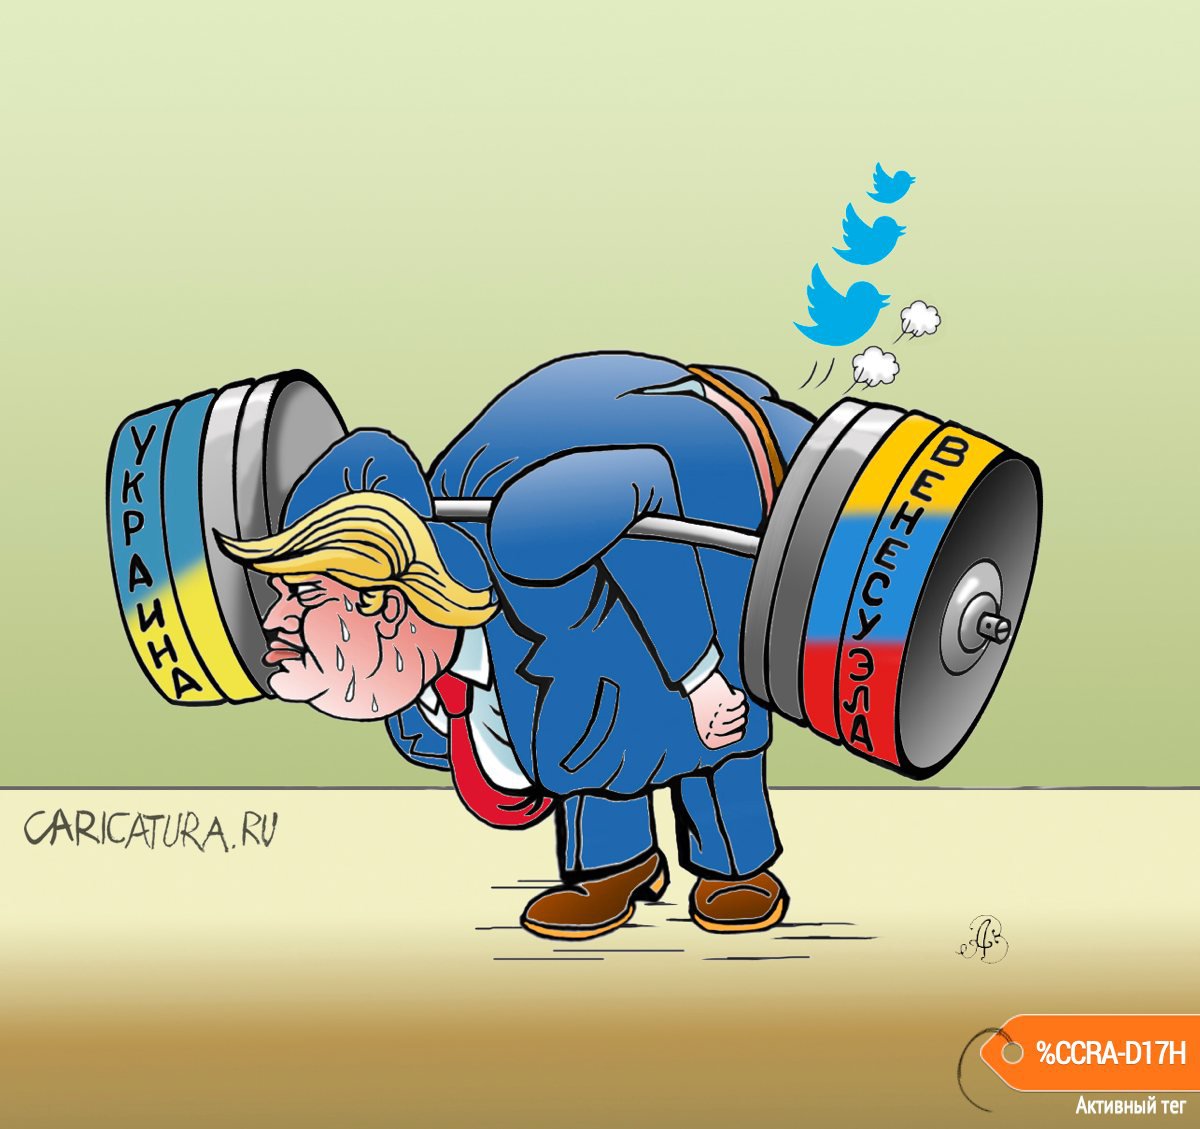 Карикатура "А не надорвётся ли Дональд", Андрей Ребров